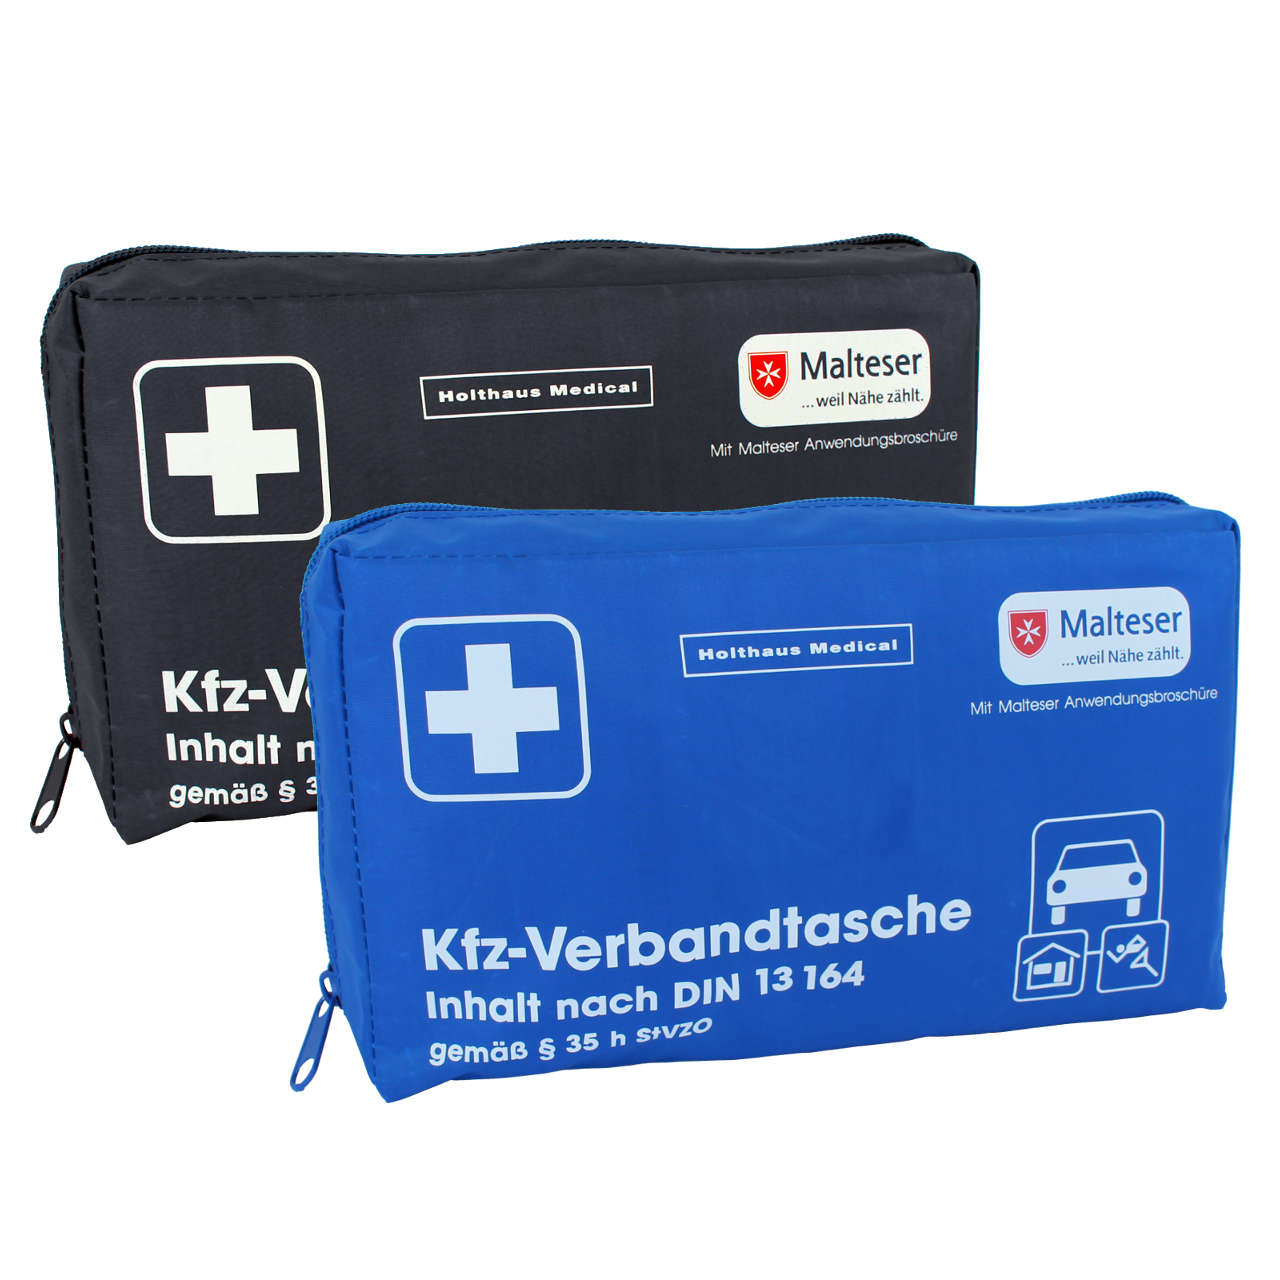 Verbandkasten Kfz Klassik Din 13164 von Holthaus Medical GmbH & Co